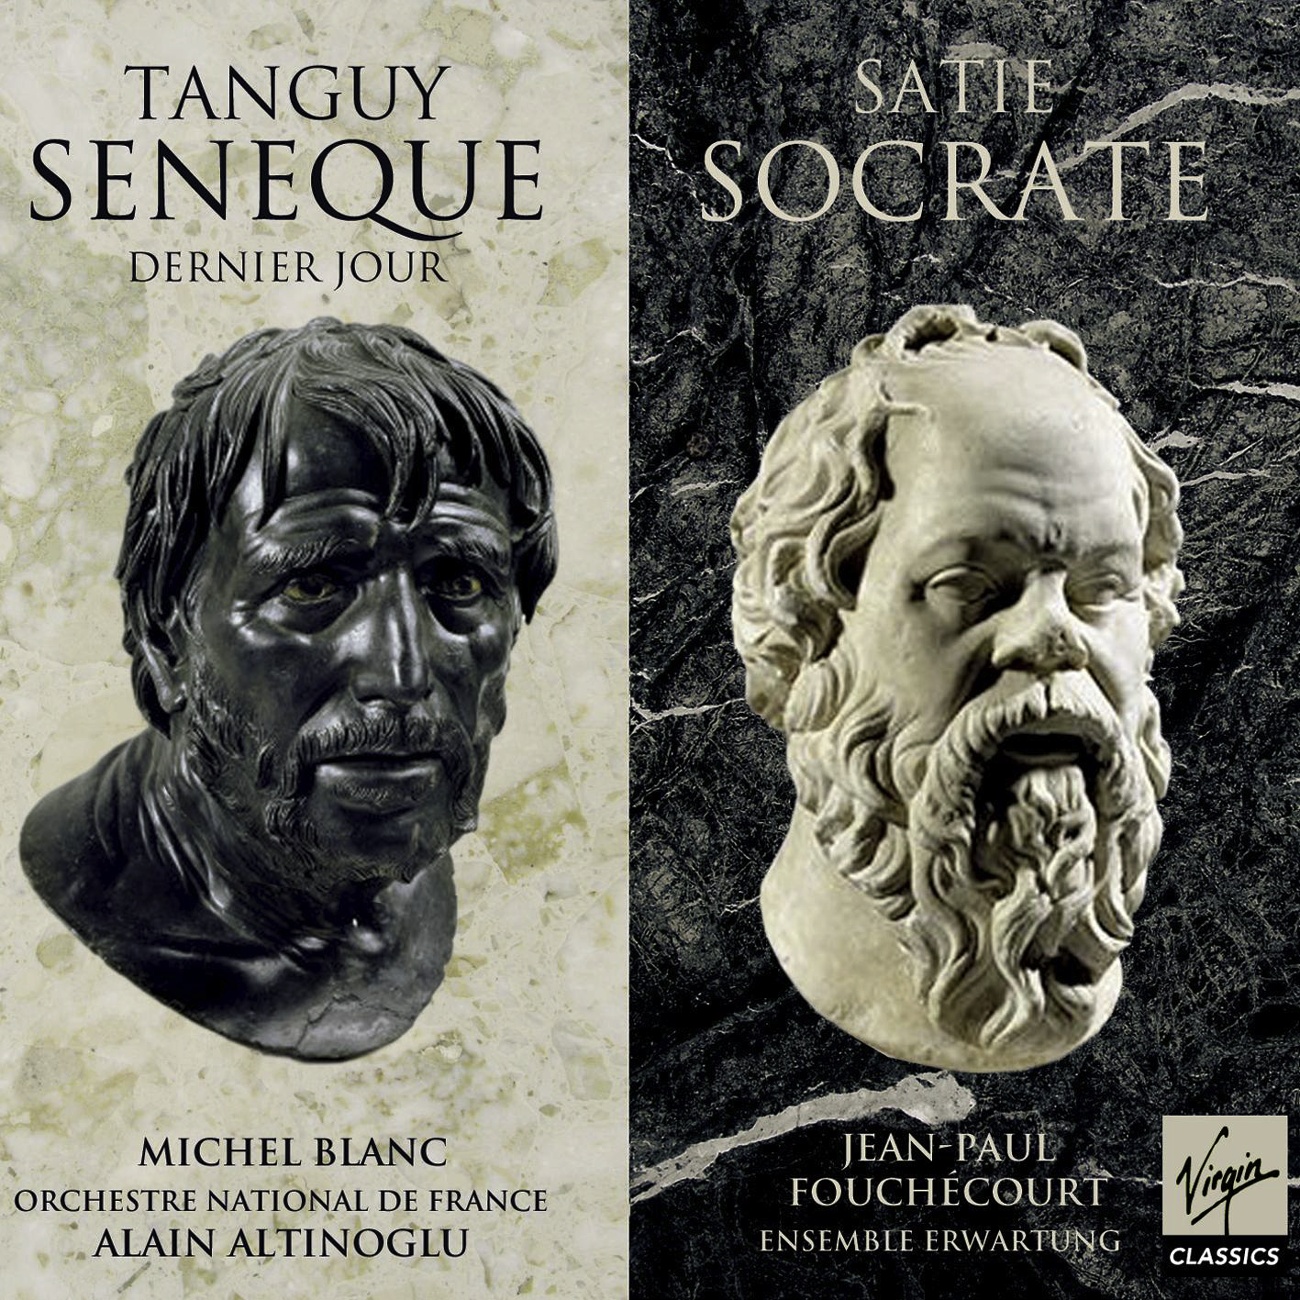 Tanguy : Se ne que, dernier jour  Satie : Socrate